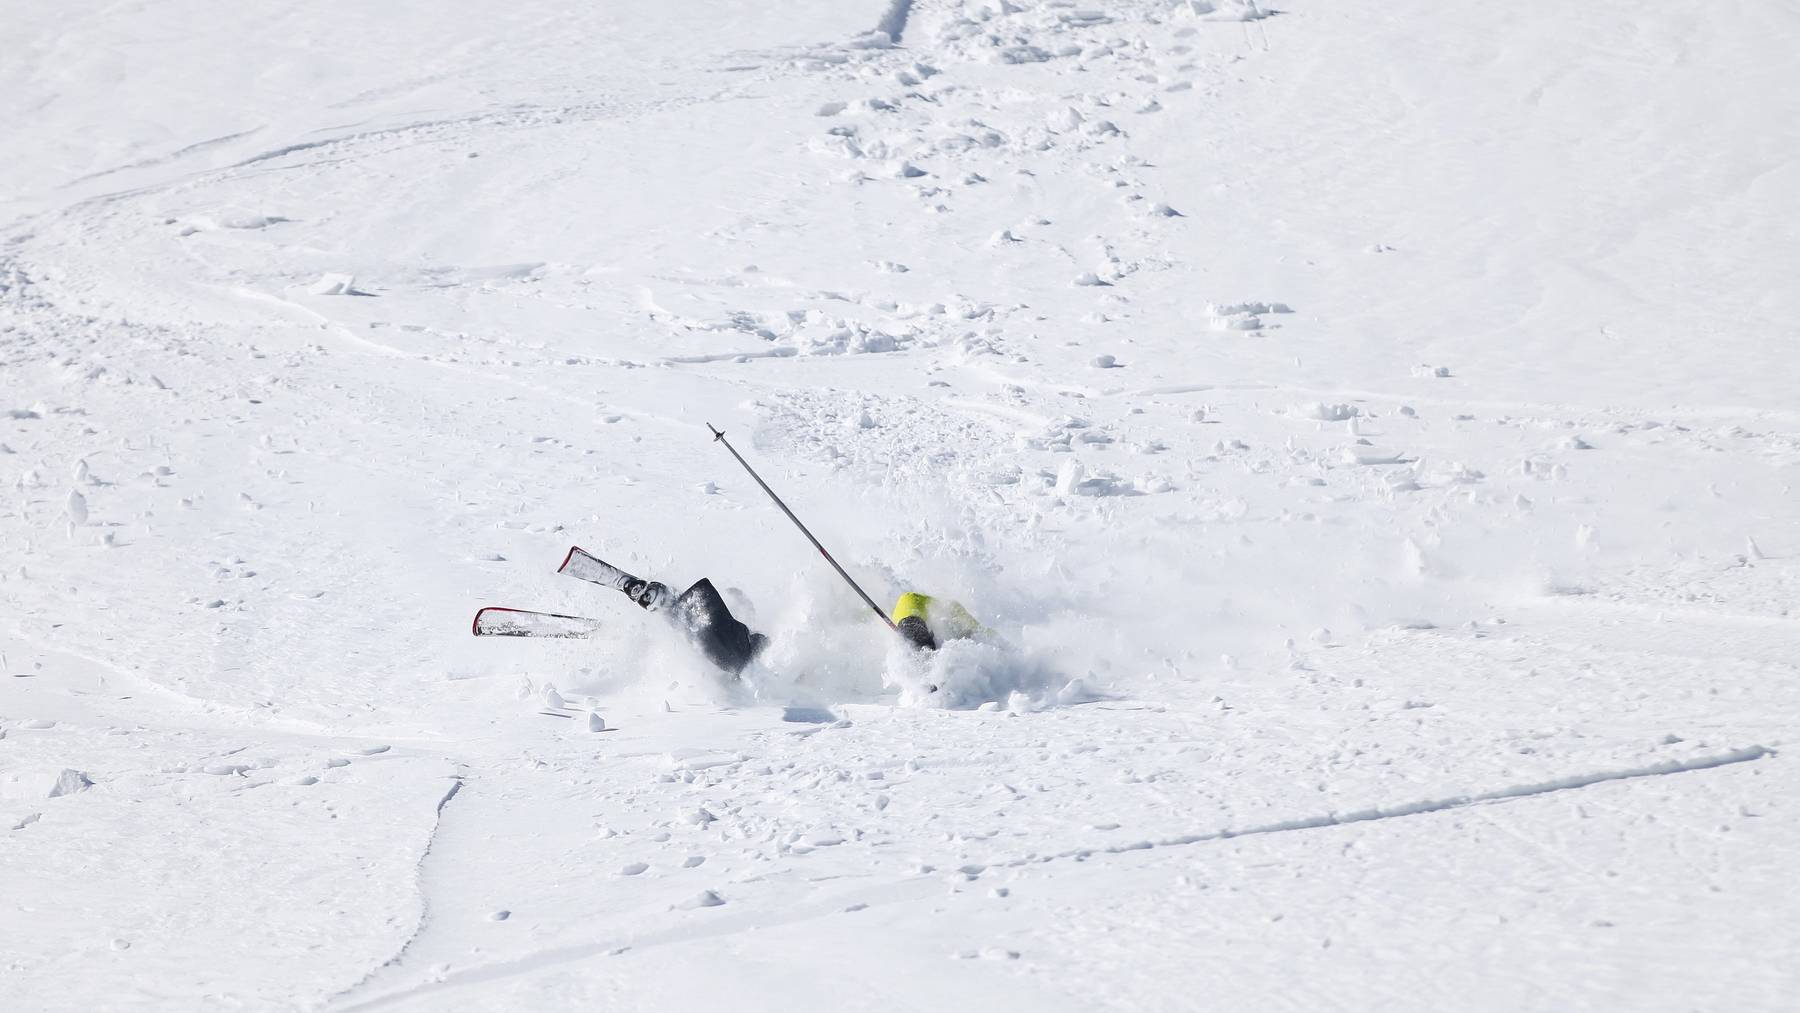 Ein unbekannter Skifahrer hat am Freitagmorgen in Lech eine 68-jährige Frau umgefahren. (Symbolbild)